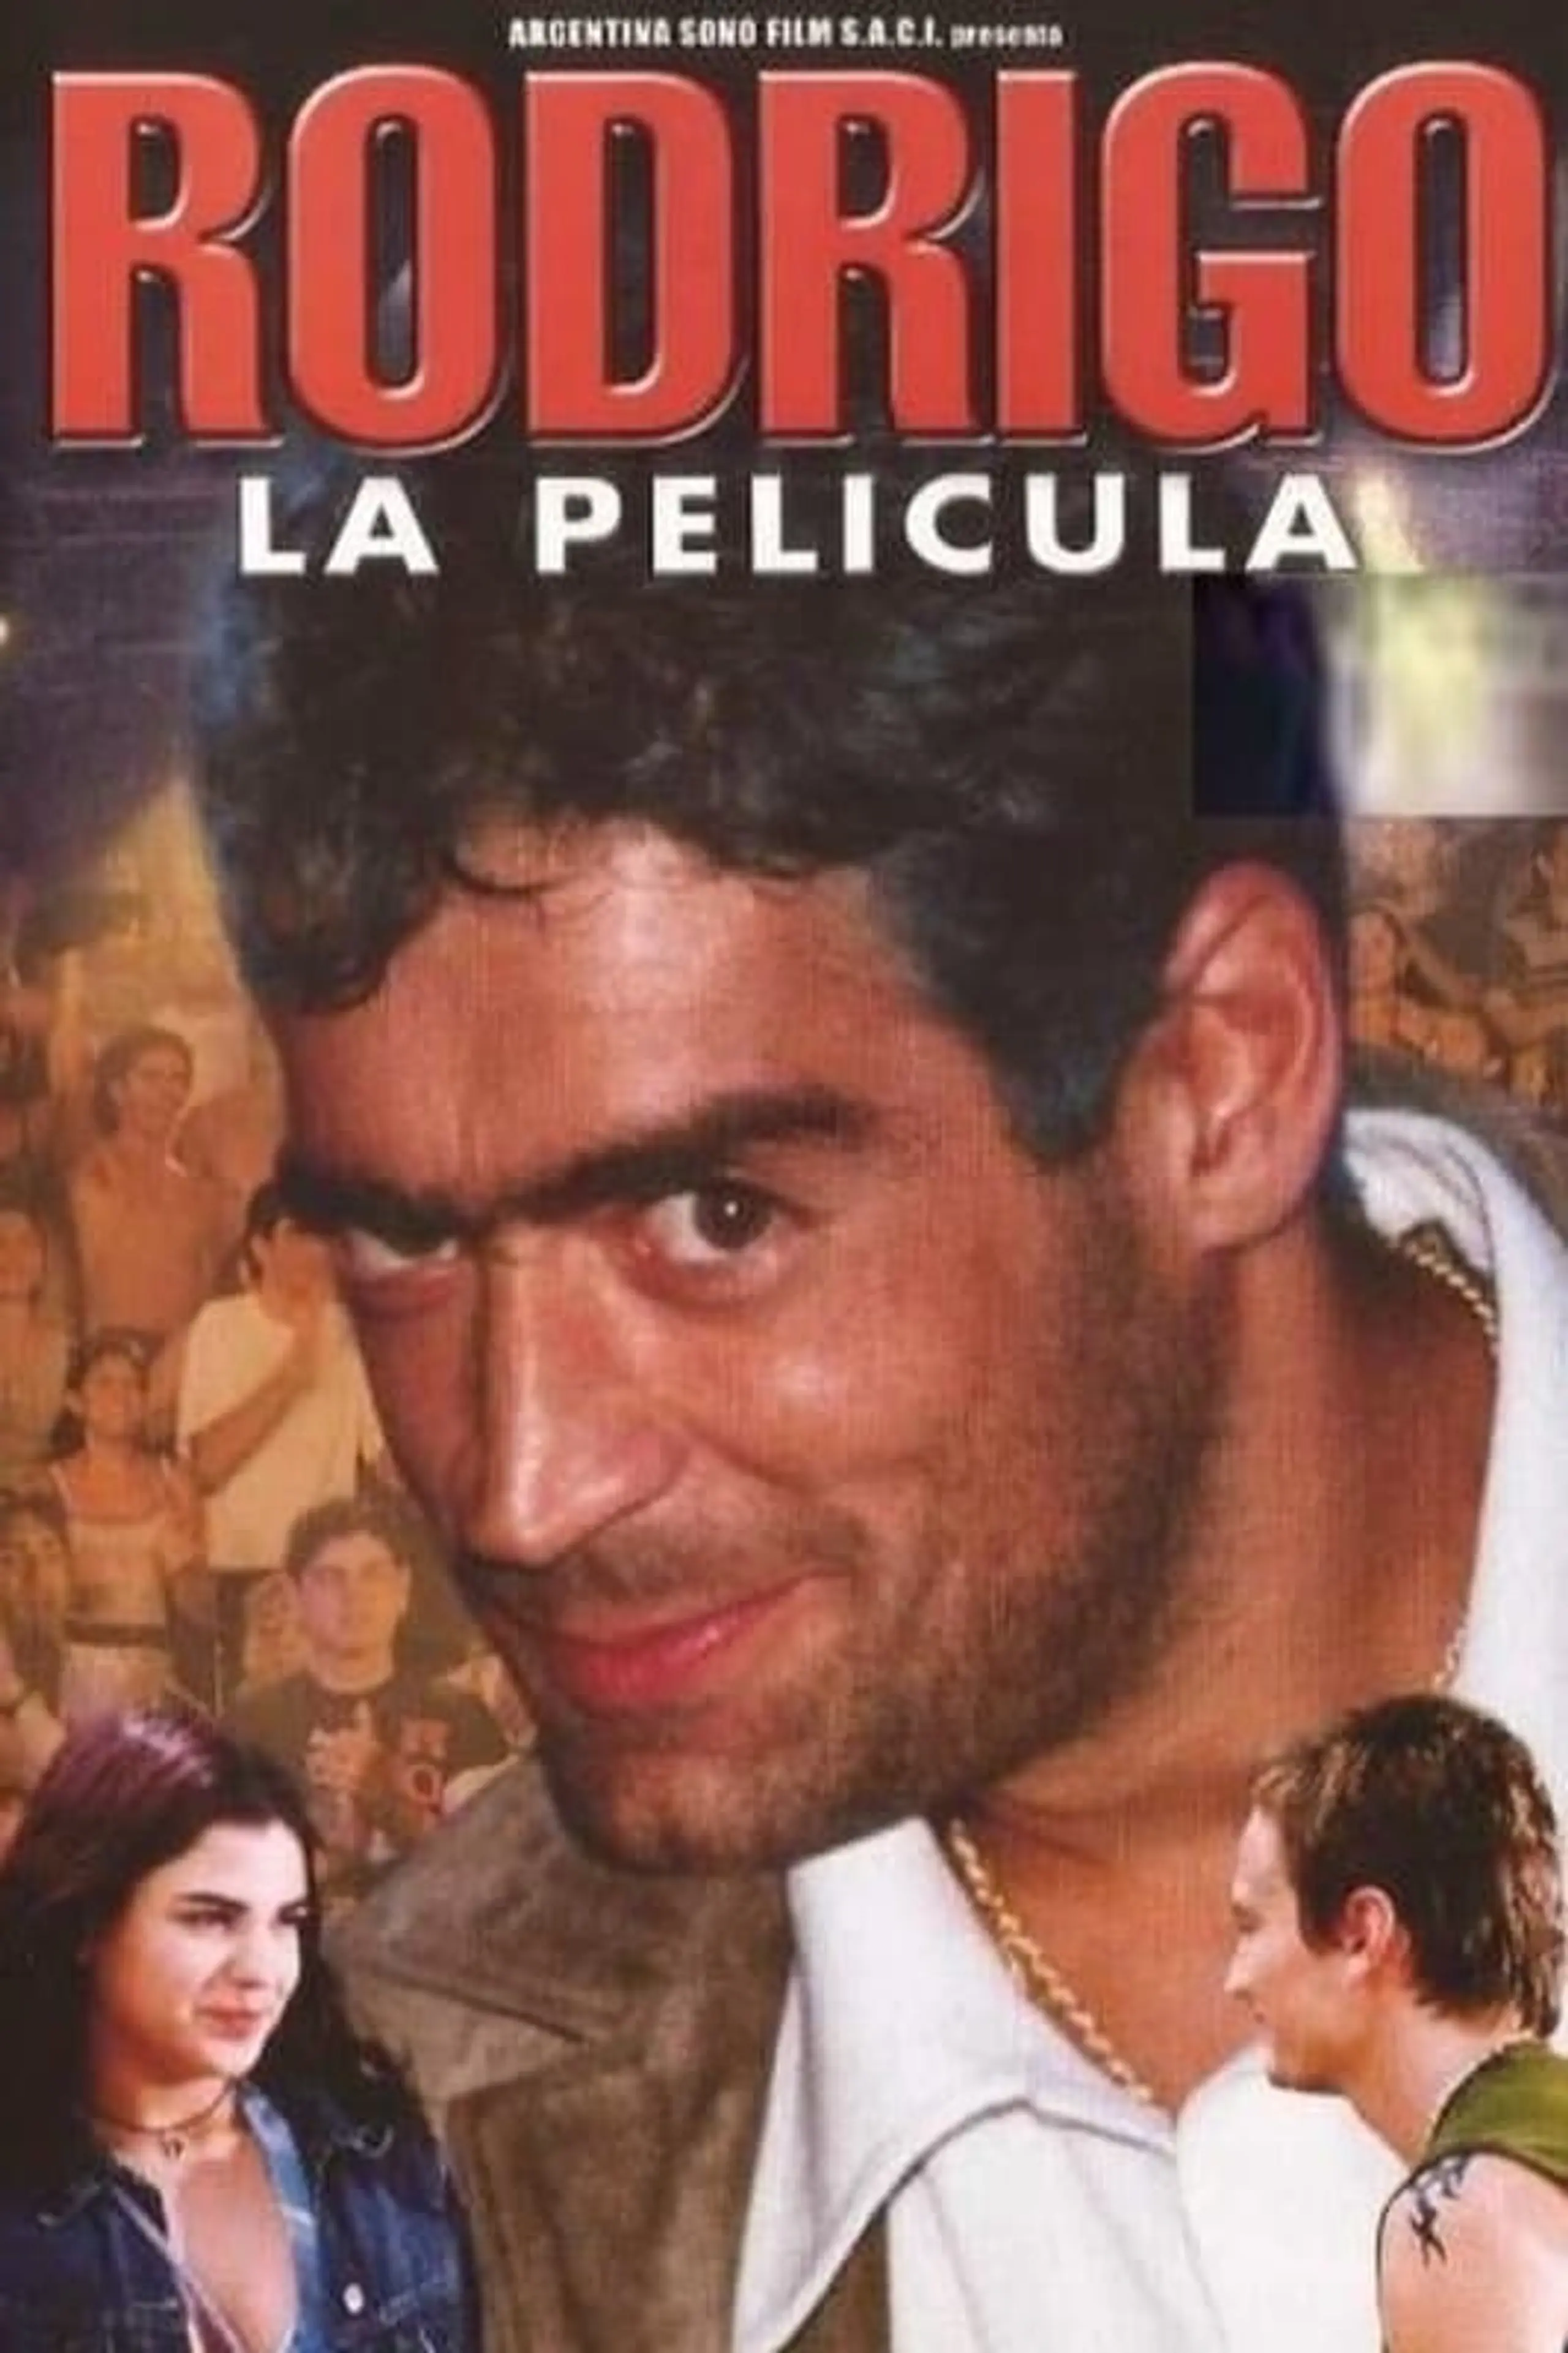 Rodrigo, la película